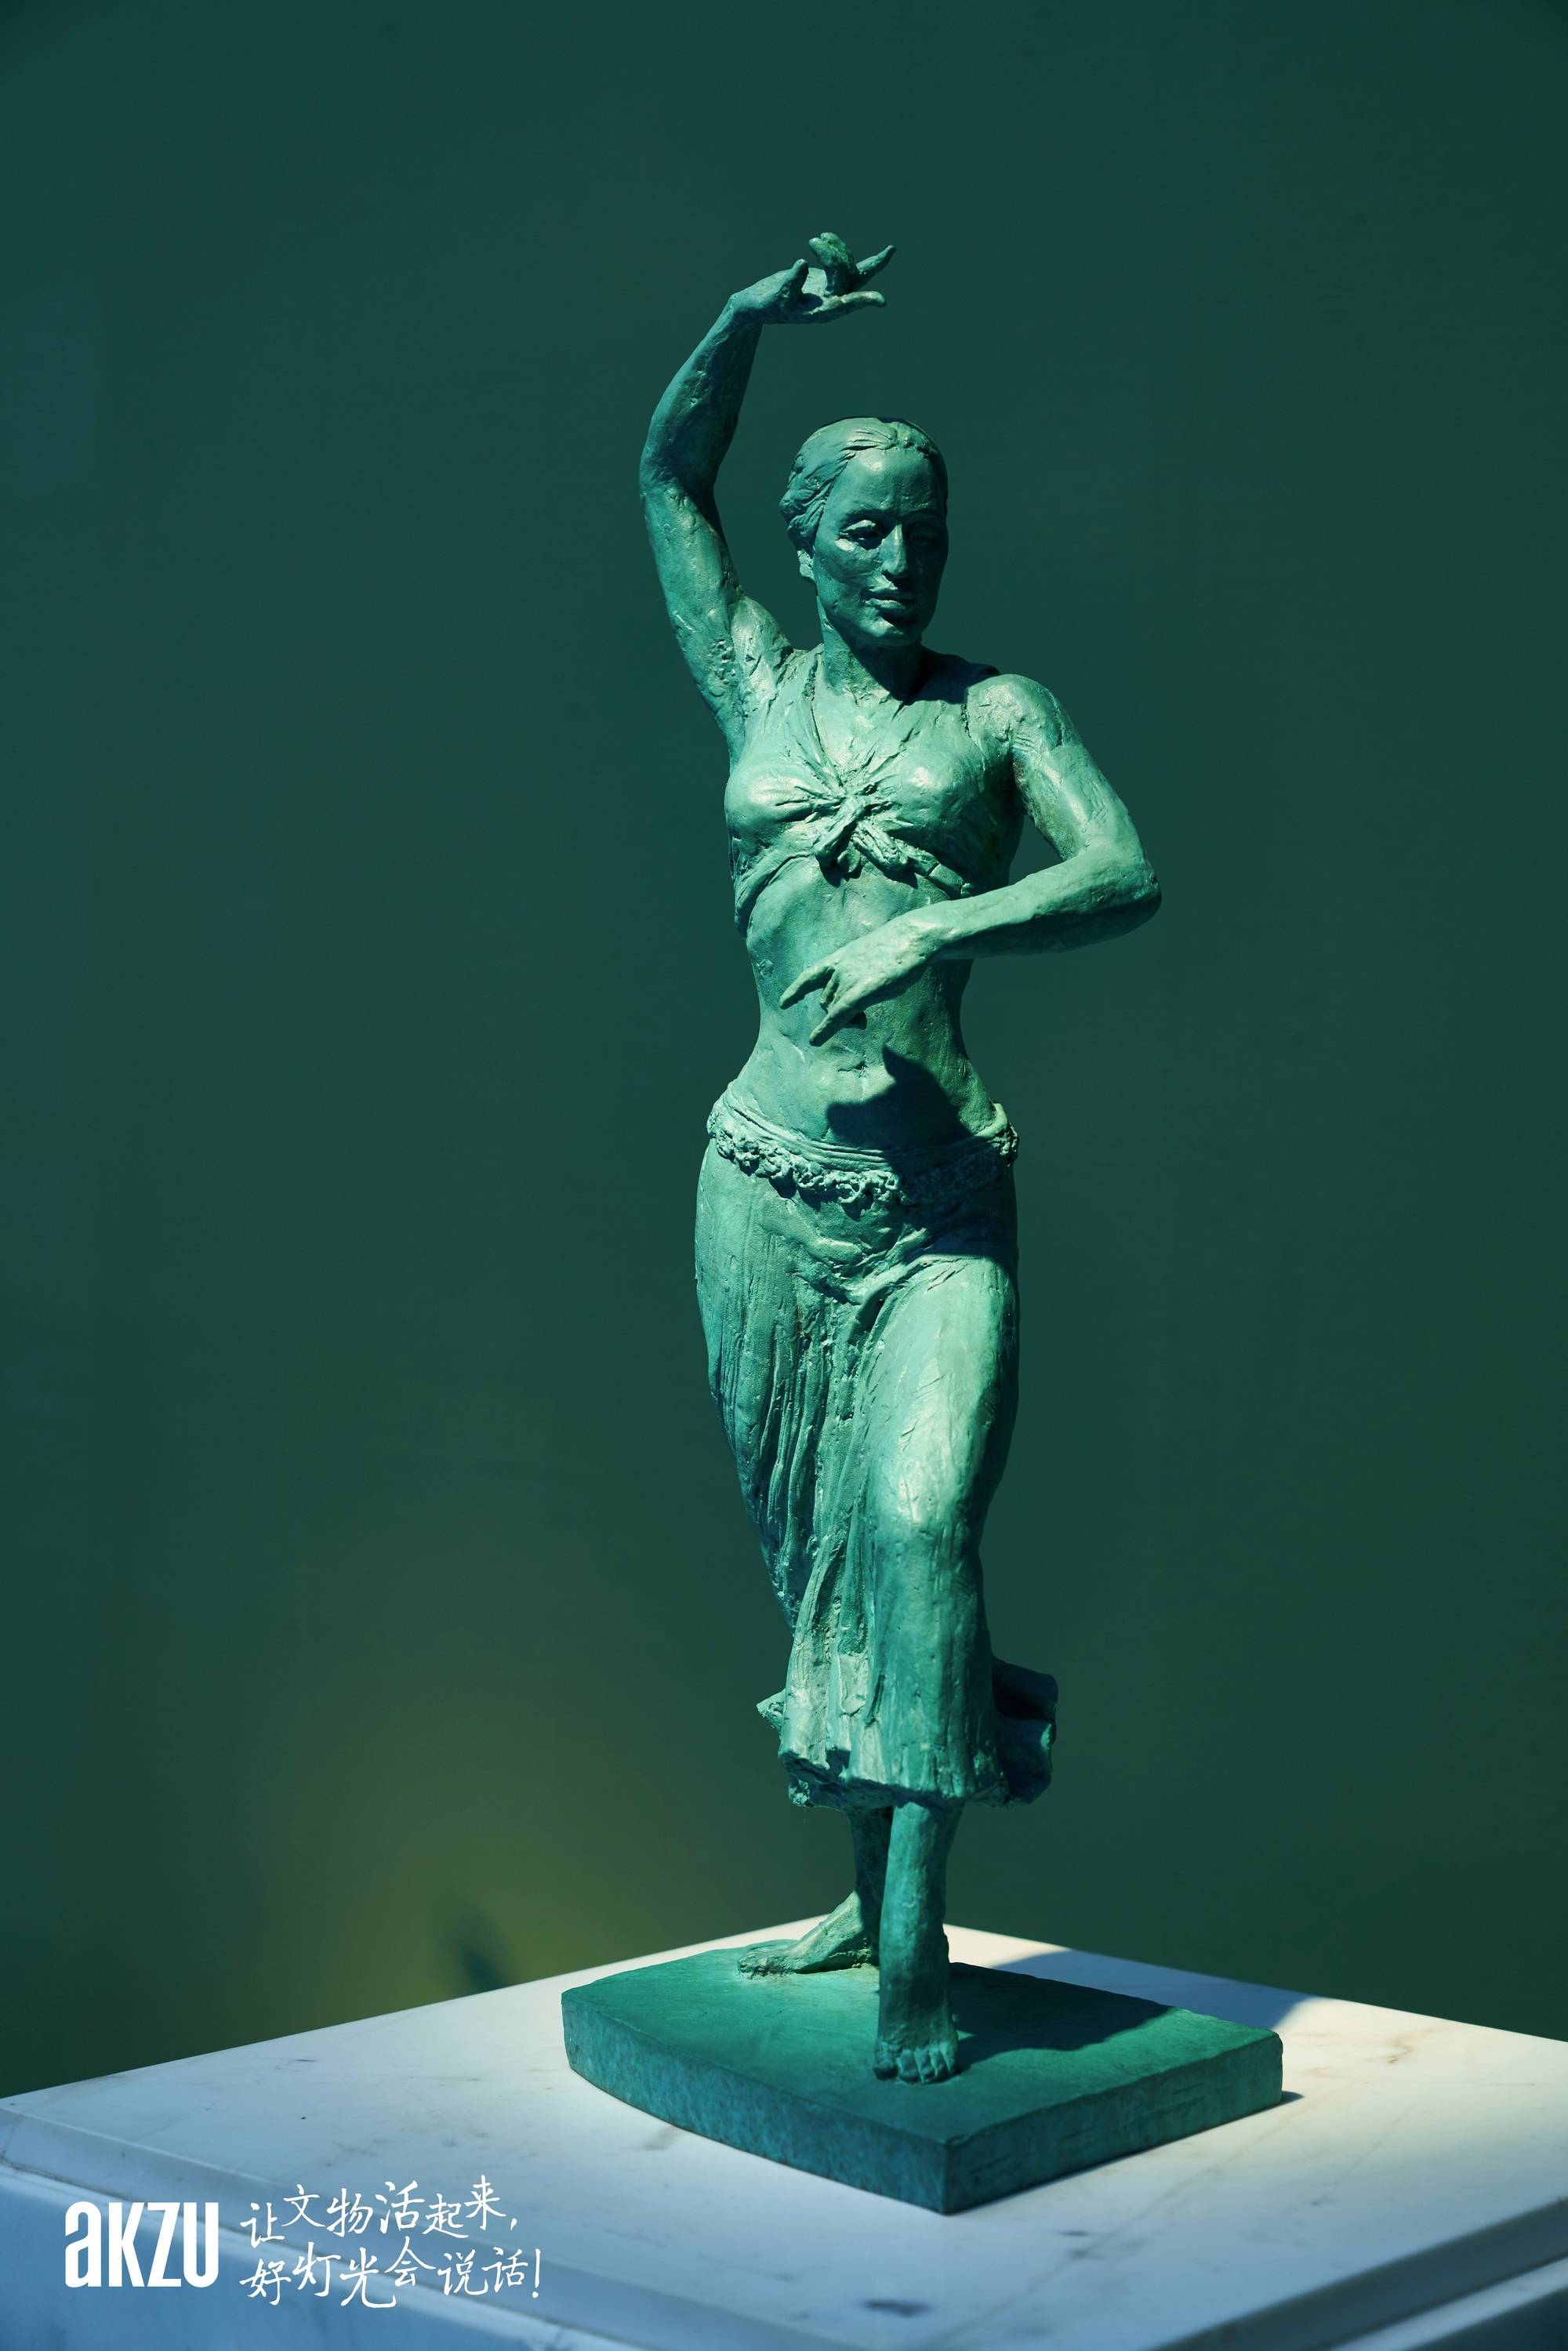 博物馆照明之曹春生雕塑艺术馆:埃克苏灯光里的大师雕塑